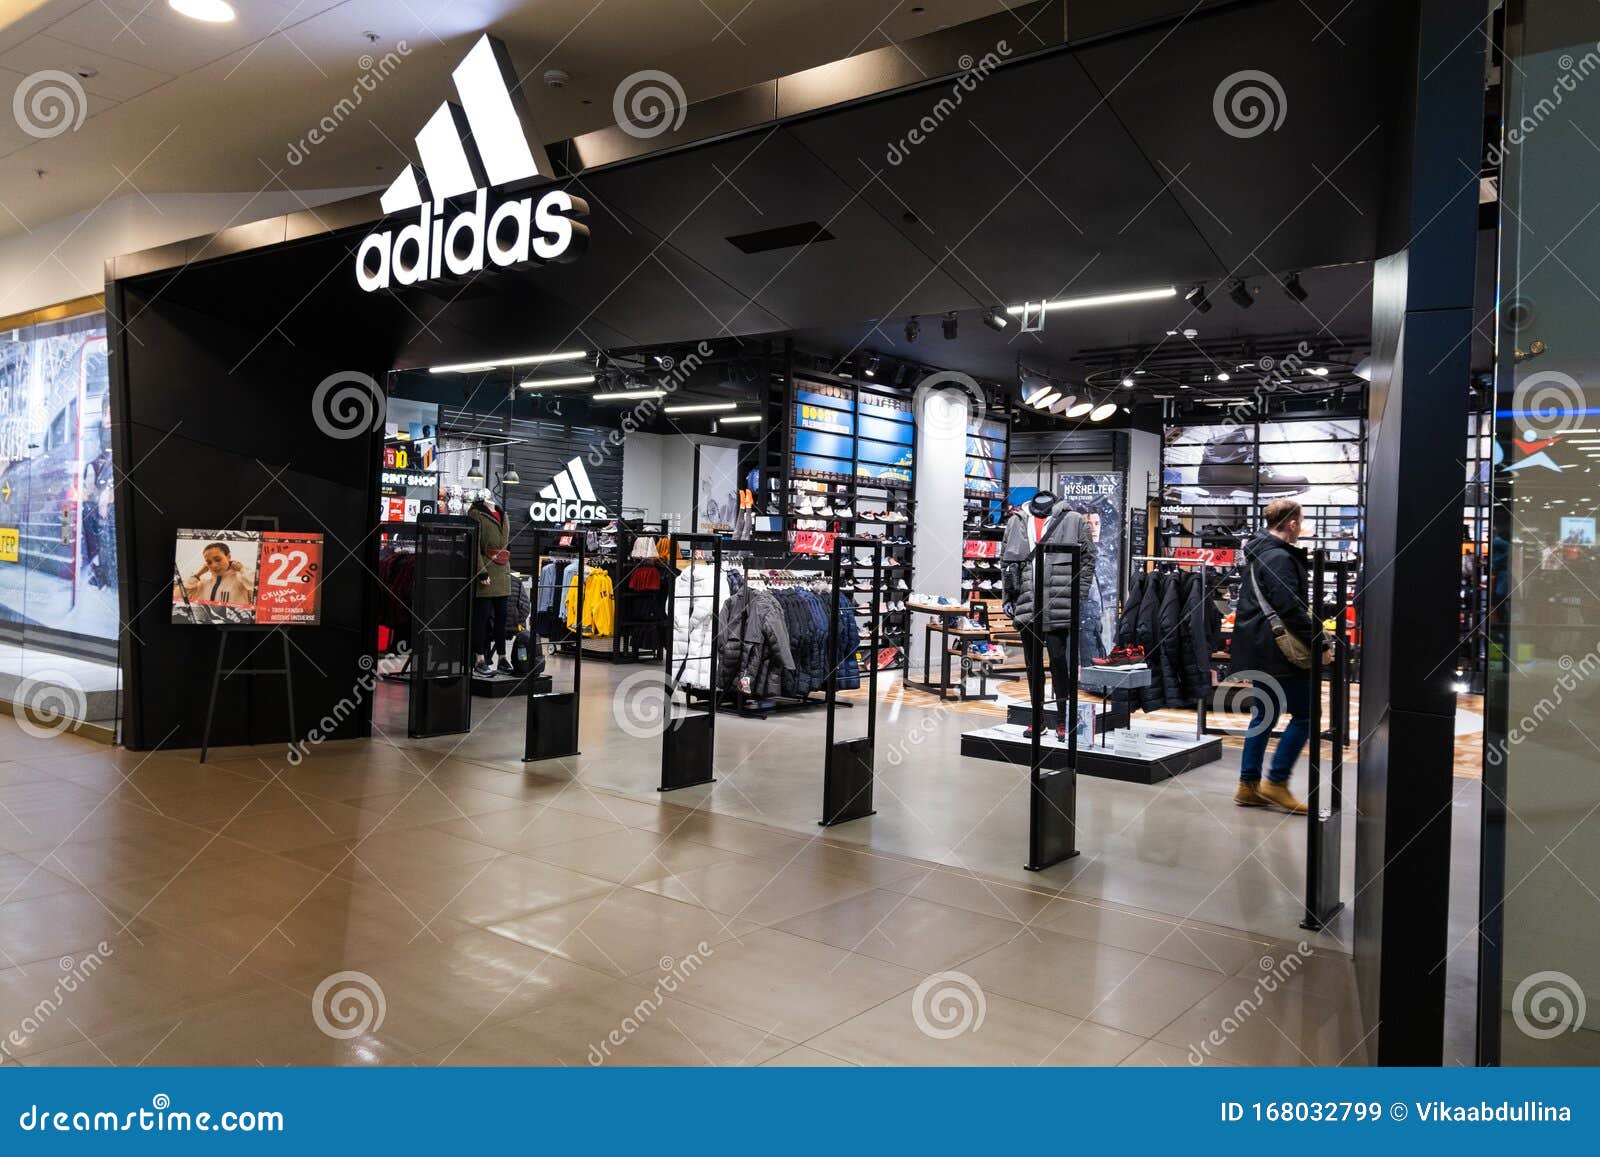 Adidas Store in Galeria Shopping Mall in Saint Petersburg, Russland  Redaktionelles Stockbild - Bild von beiläufig, mode: 168032799